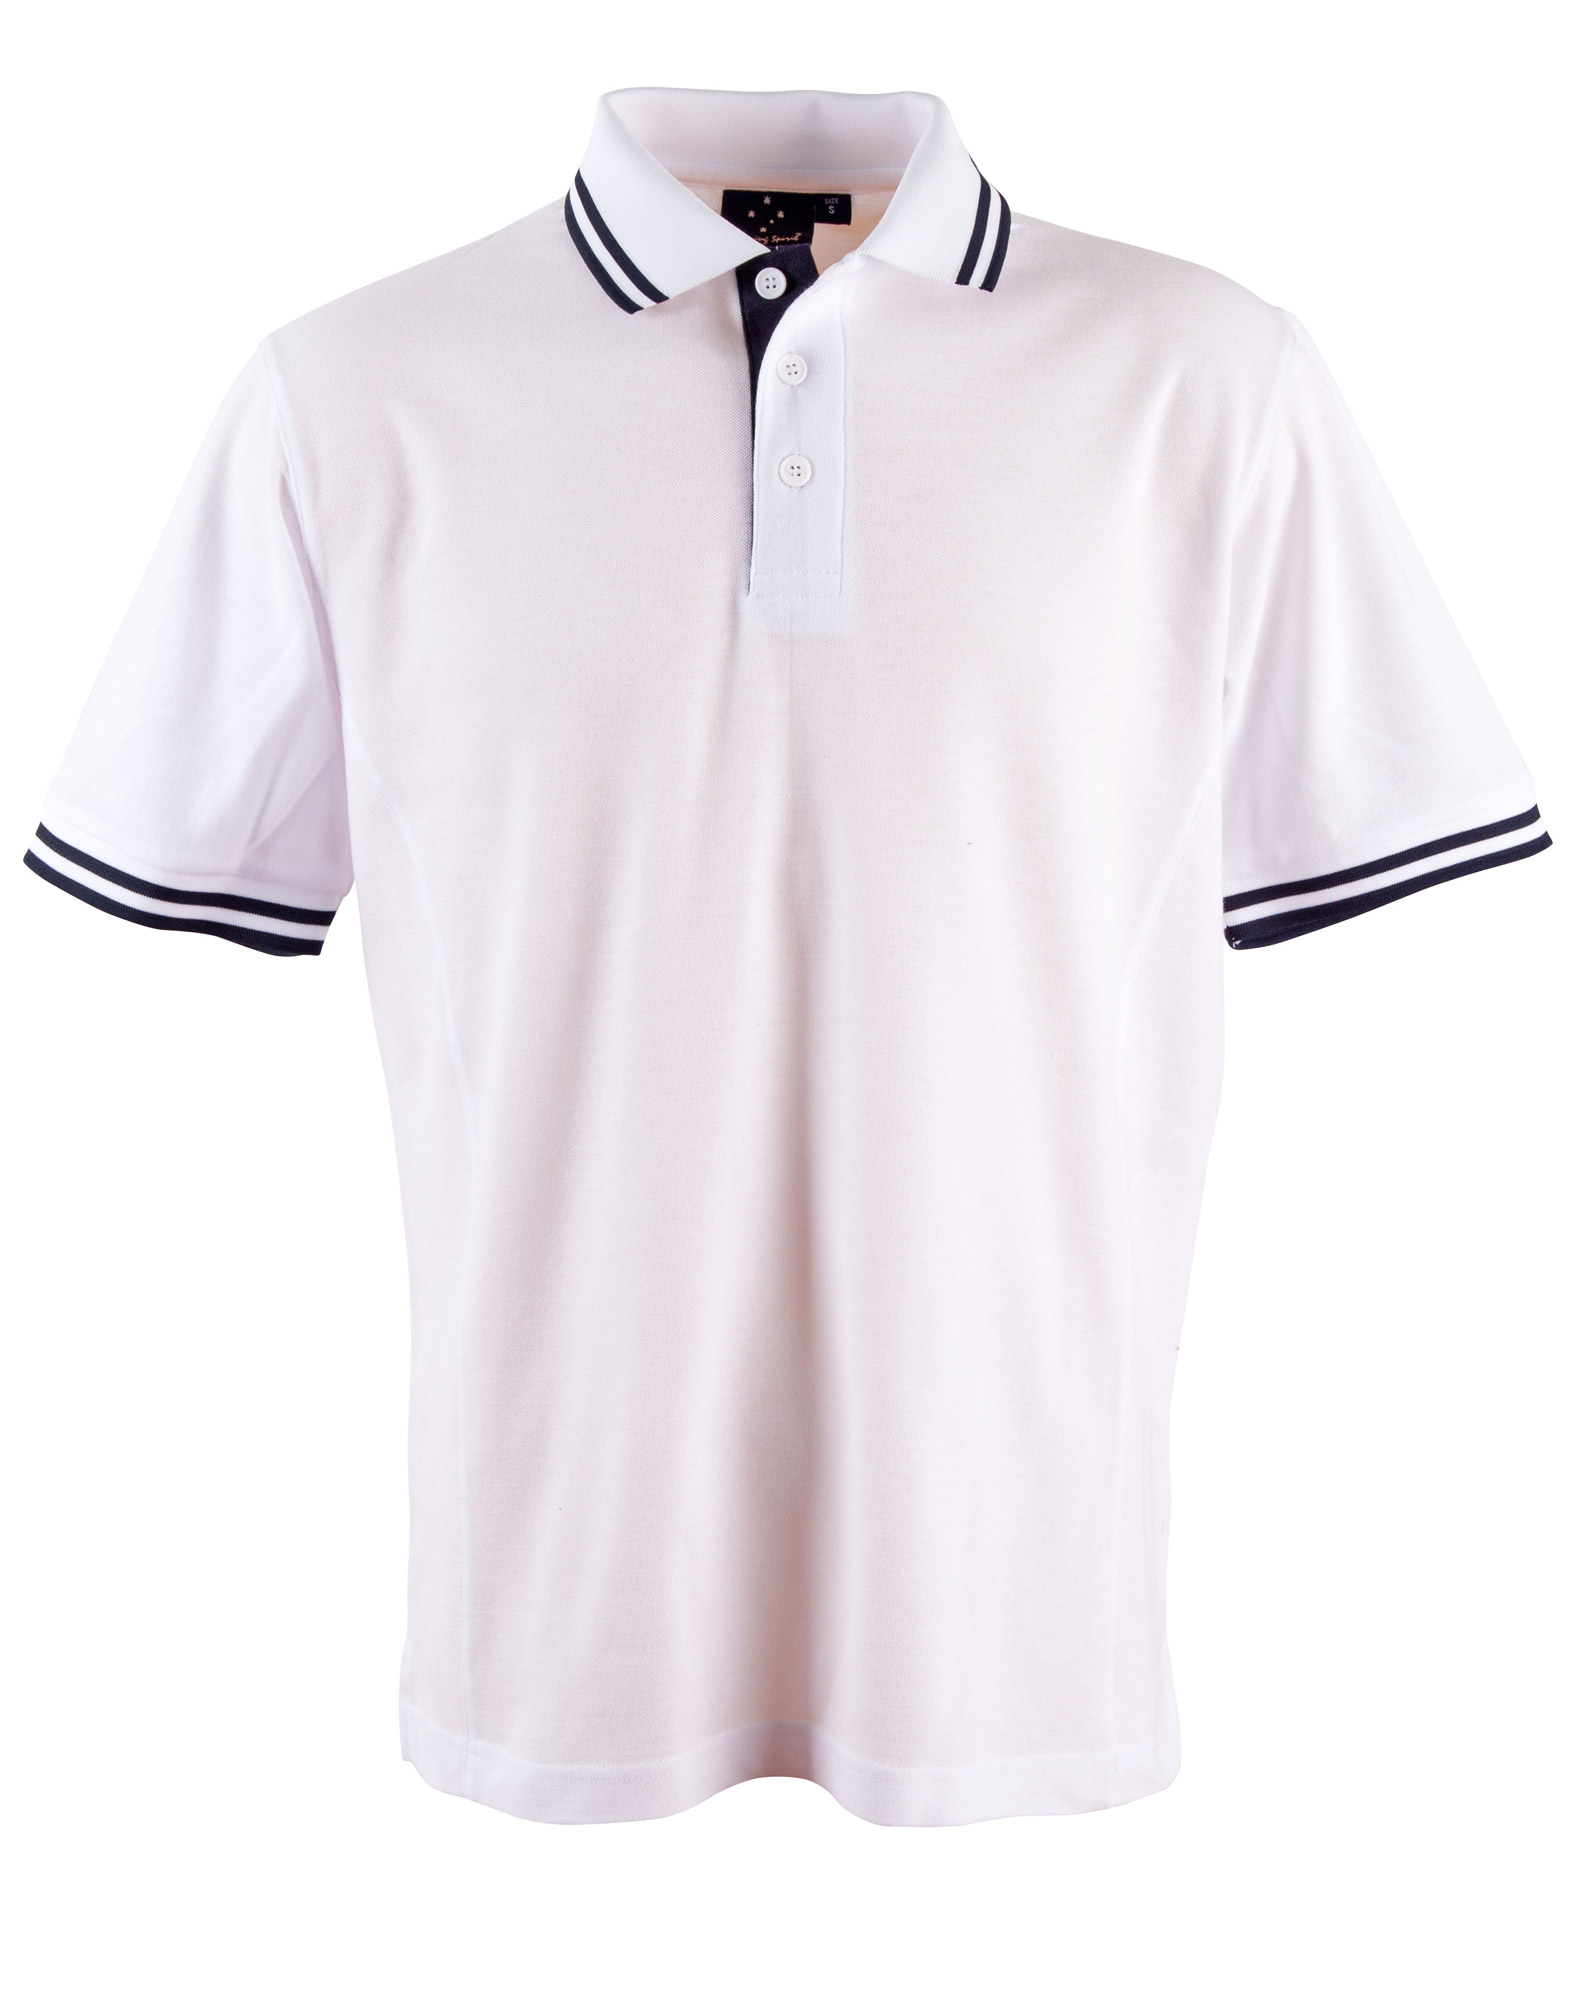 Custom Mens White Navy Grace Pique Polo Shirt backside Online Perth Australia